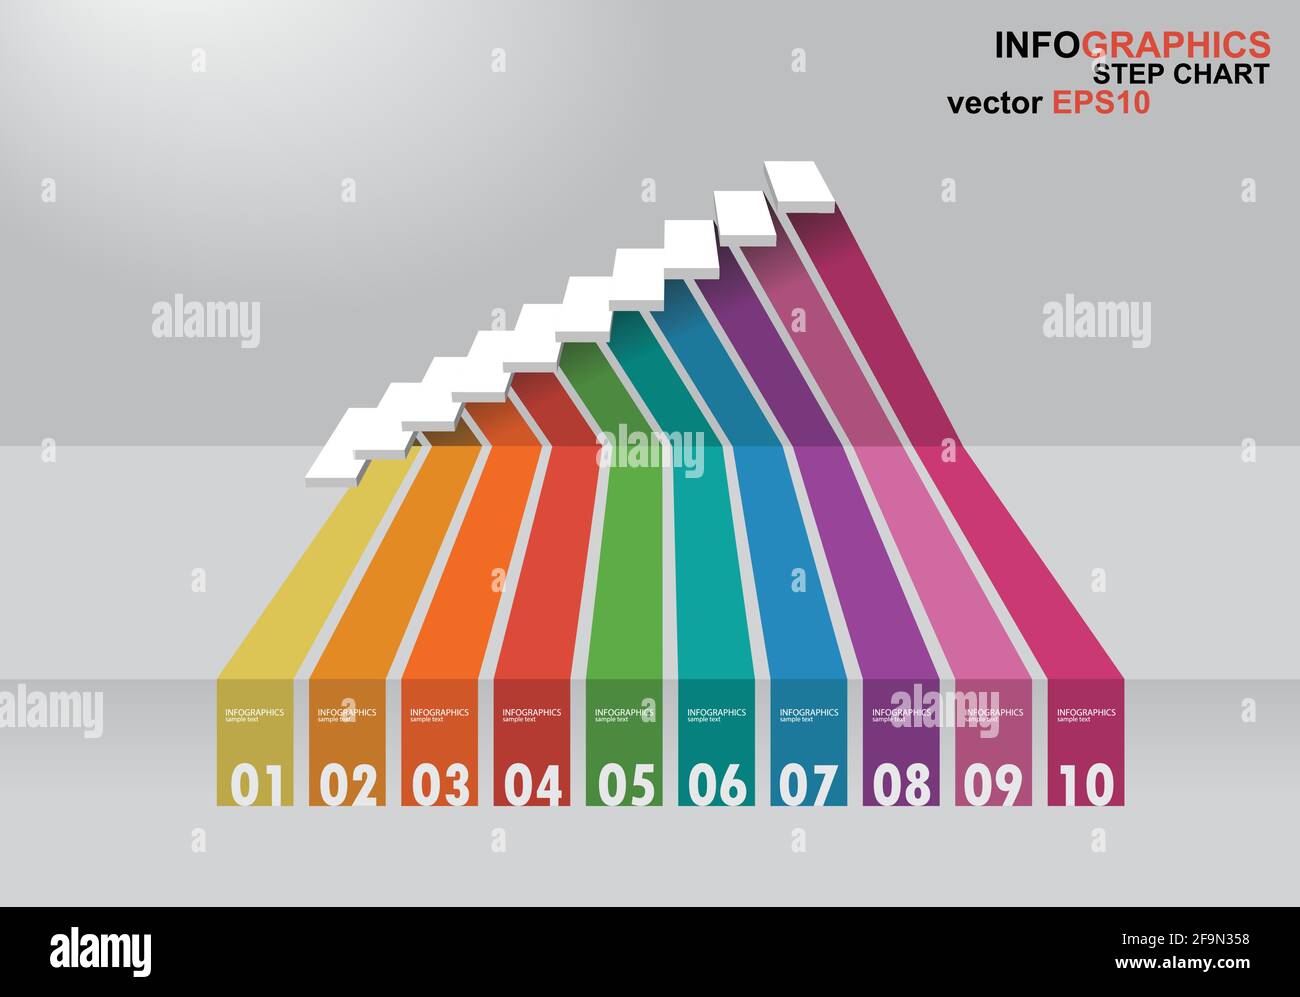 Die 3-dimensionale Treppe hat Schatten für EPS 10 Vektor Infografiken Stock Vektor